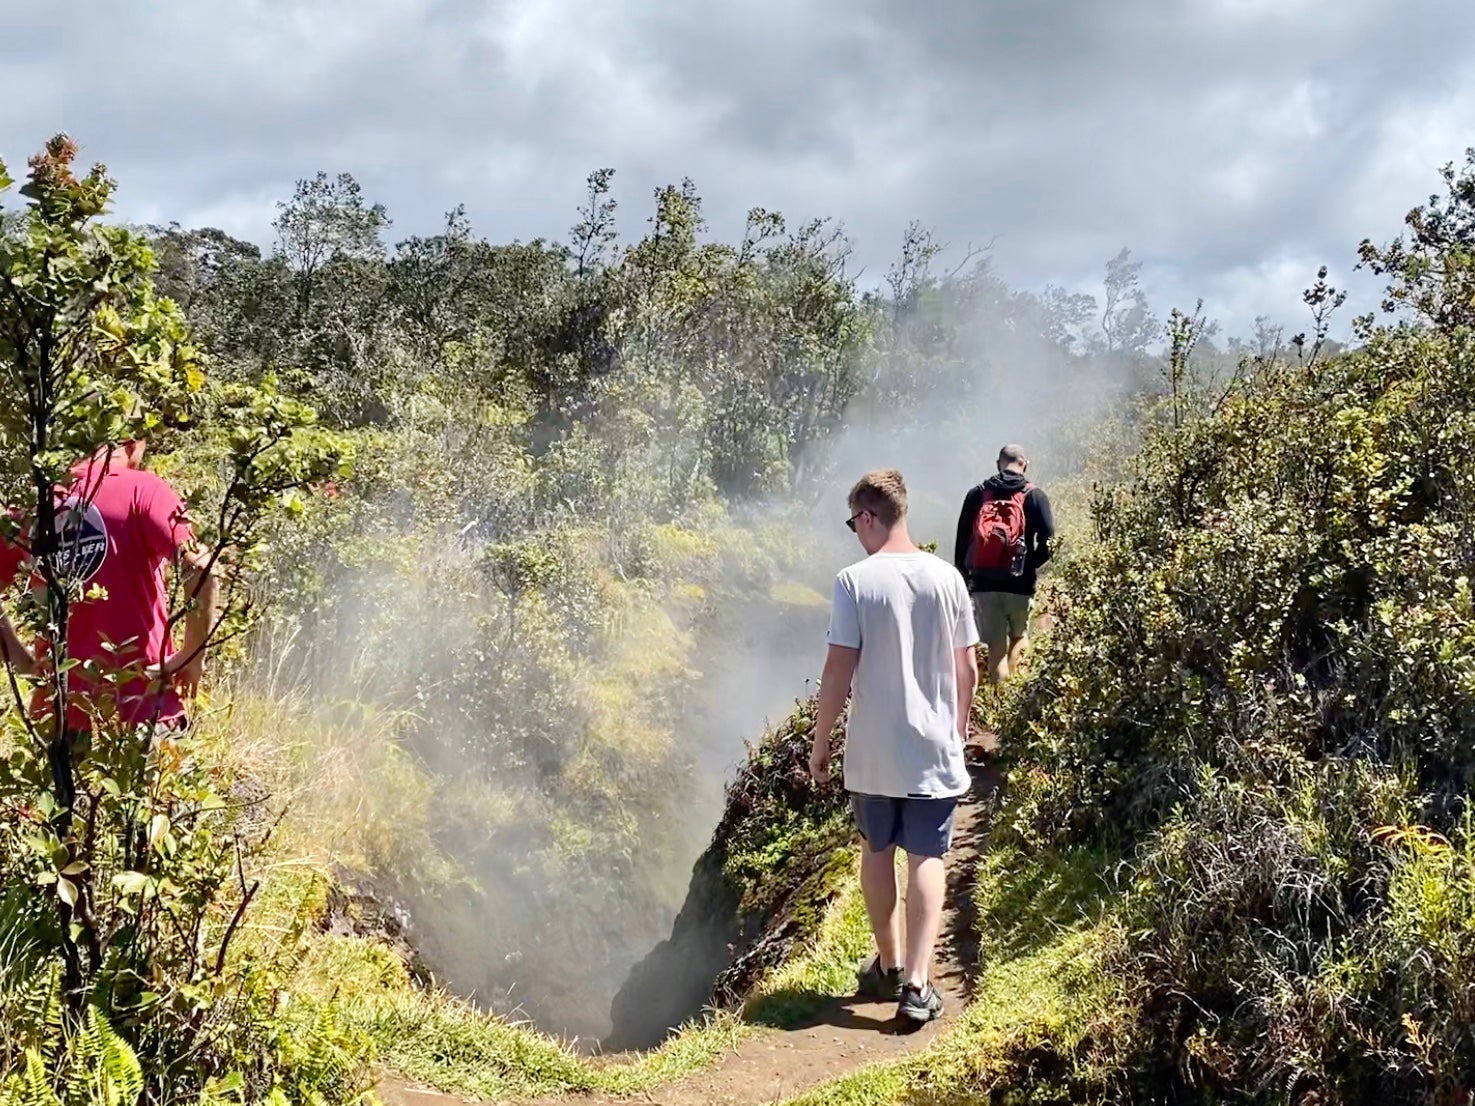  La randonnée près du cratère Kilauea sur la Grande Île est exaltante. (photo par 2DadsWithBaggage) 